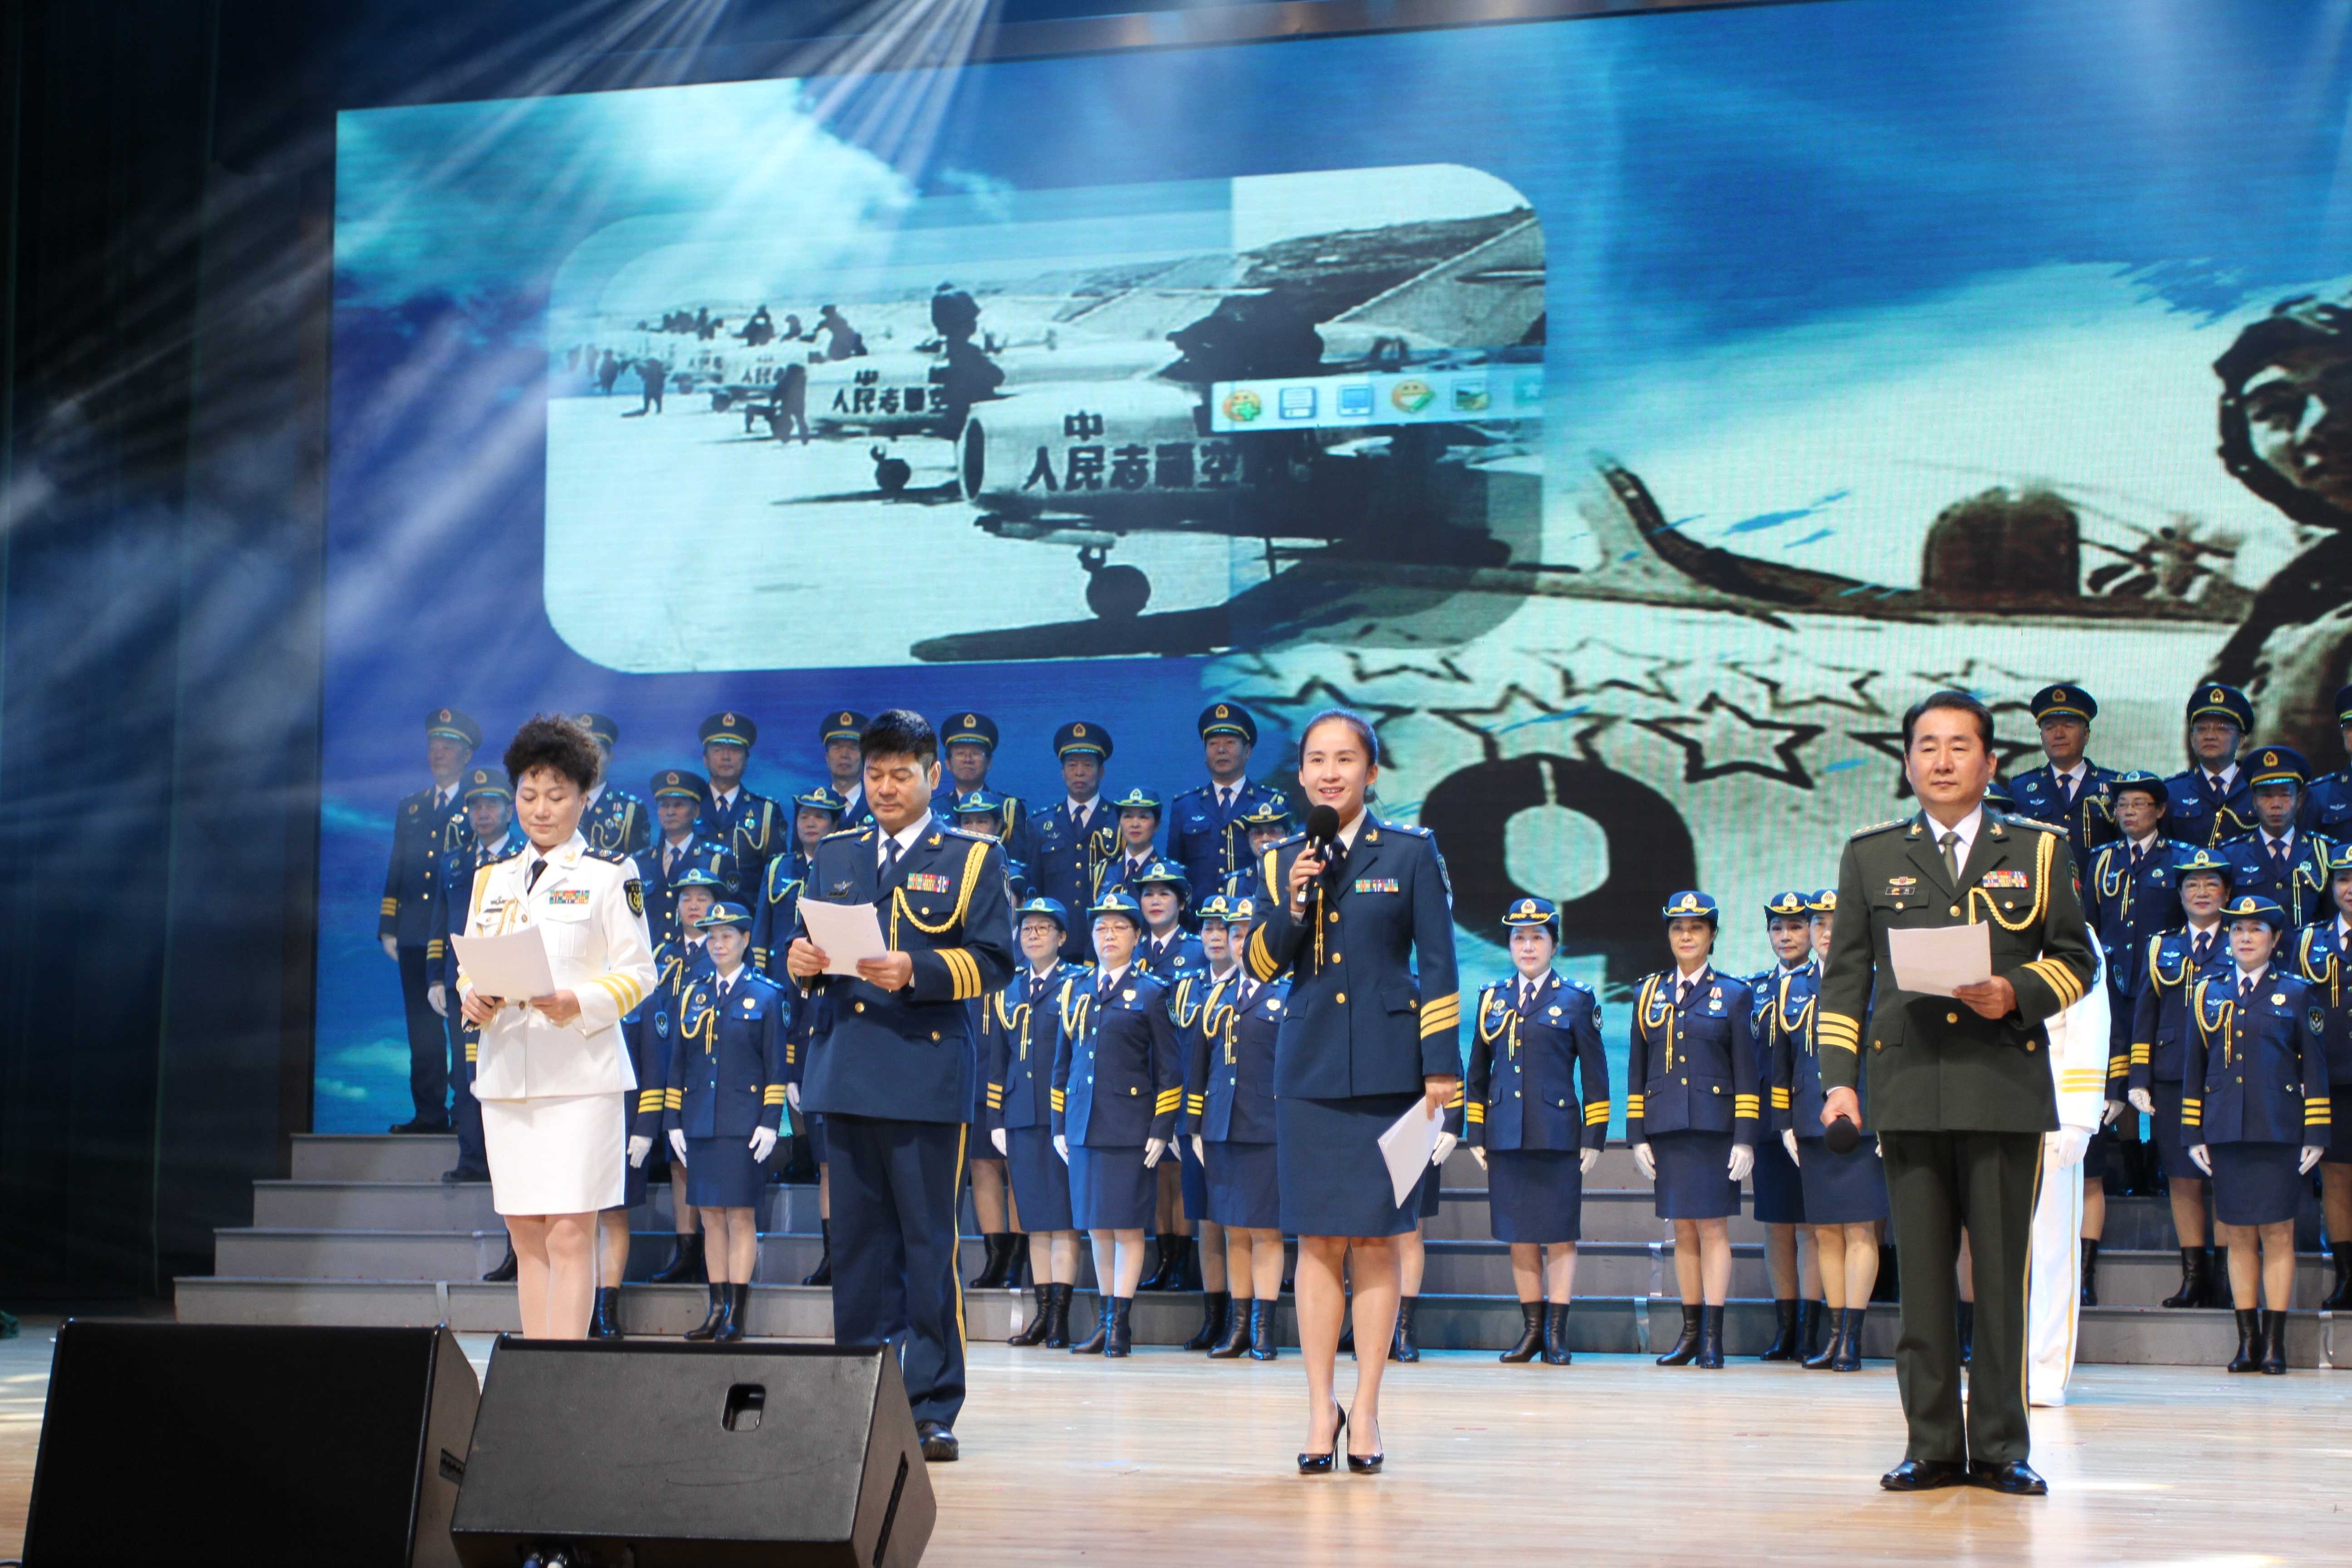 广州举行纪念空军成立70周年文艺演出